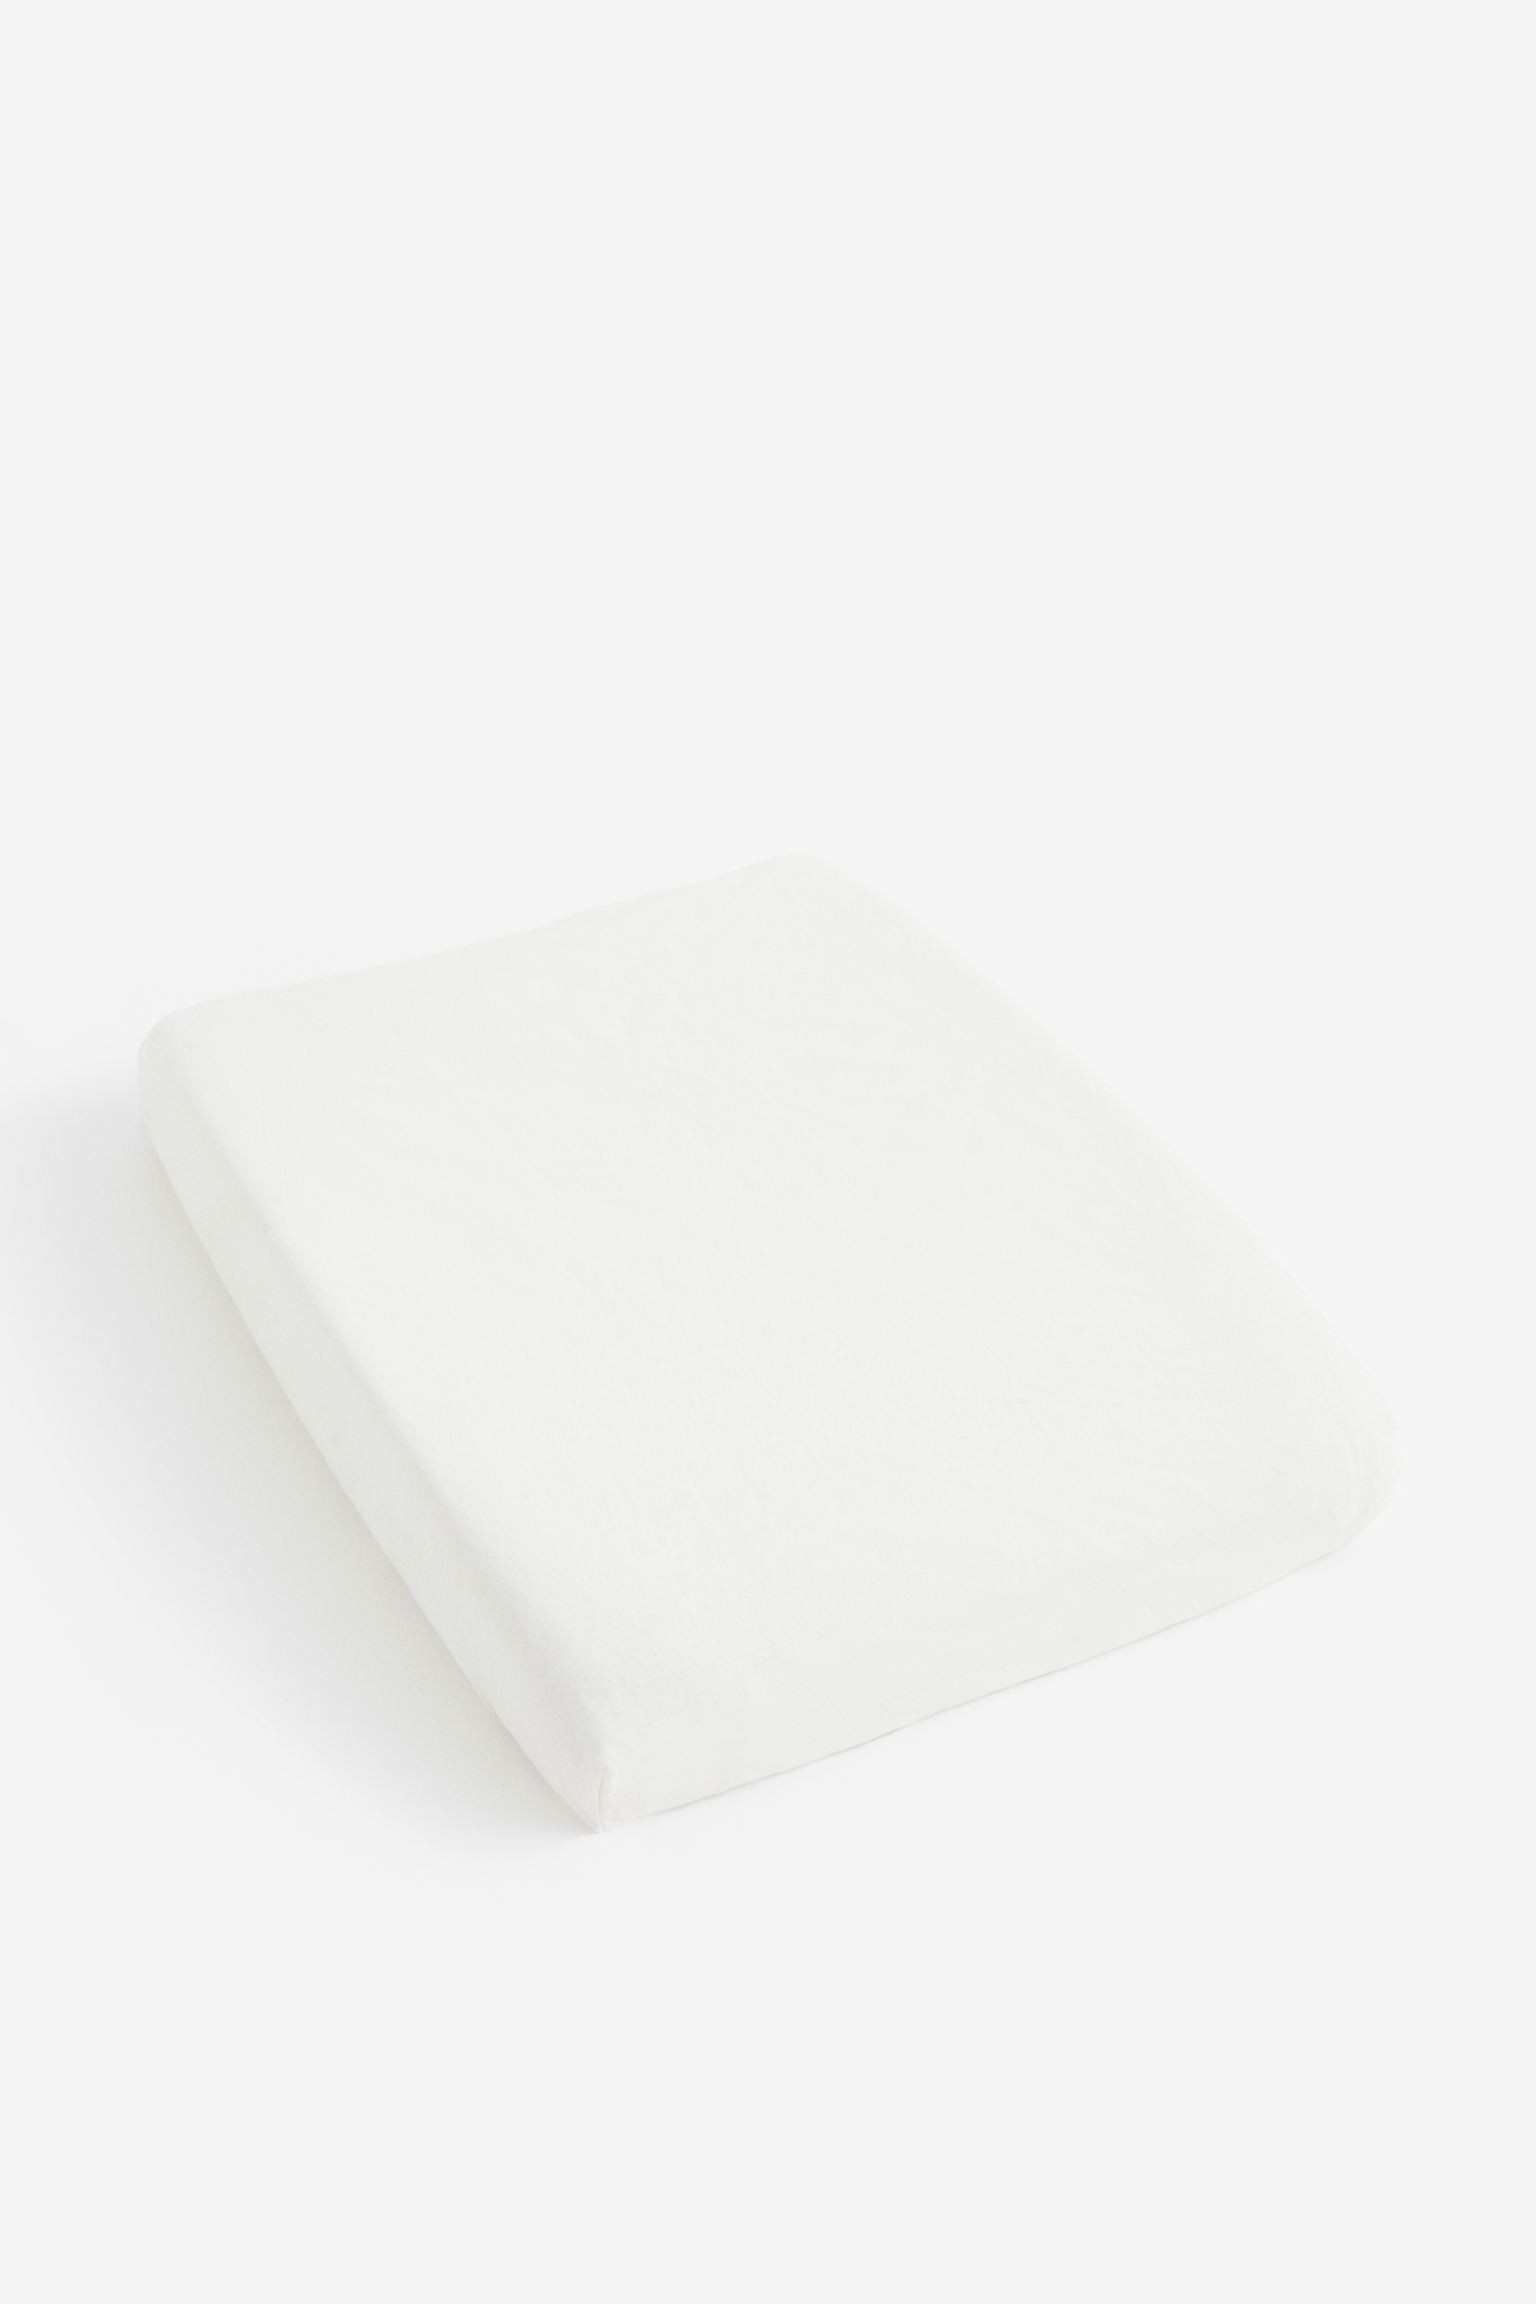 Чехол на пеленальную подстилку, Белый, 50x70